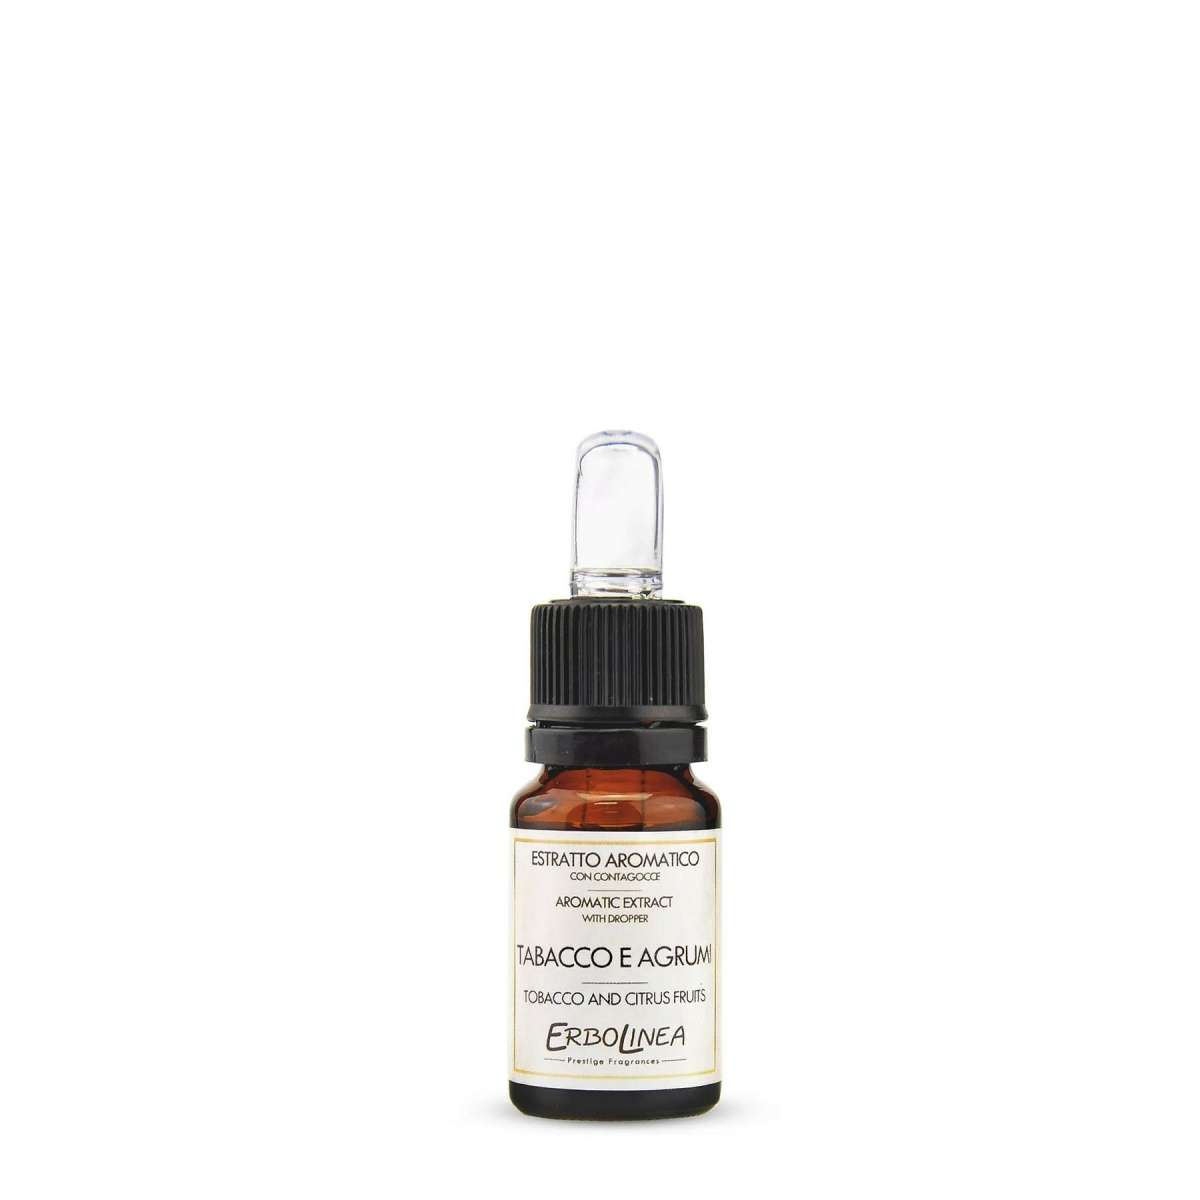 Immagine del prodotto Estratto Aromatico con Contagocce Tabacco e Agrumi 10 ml | Erbolinea Prestige